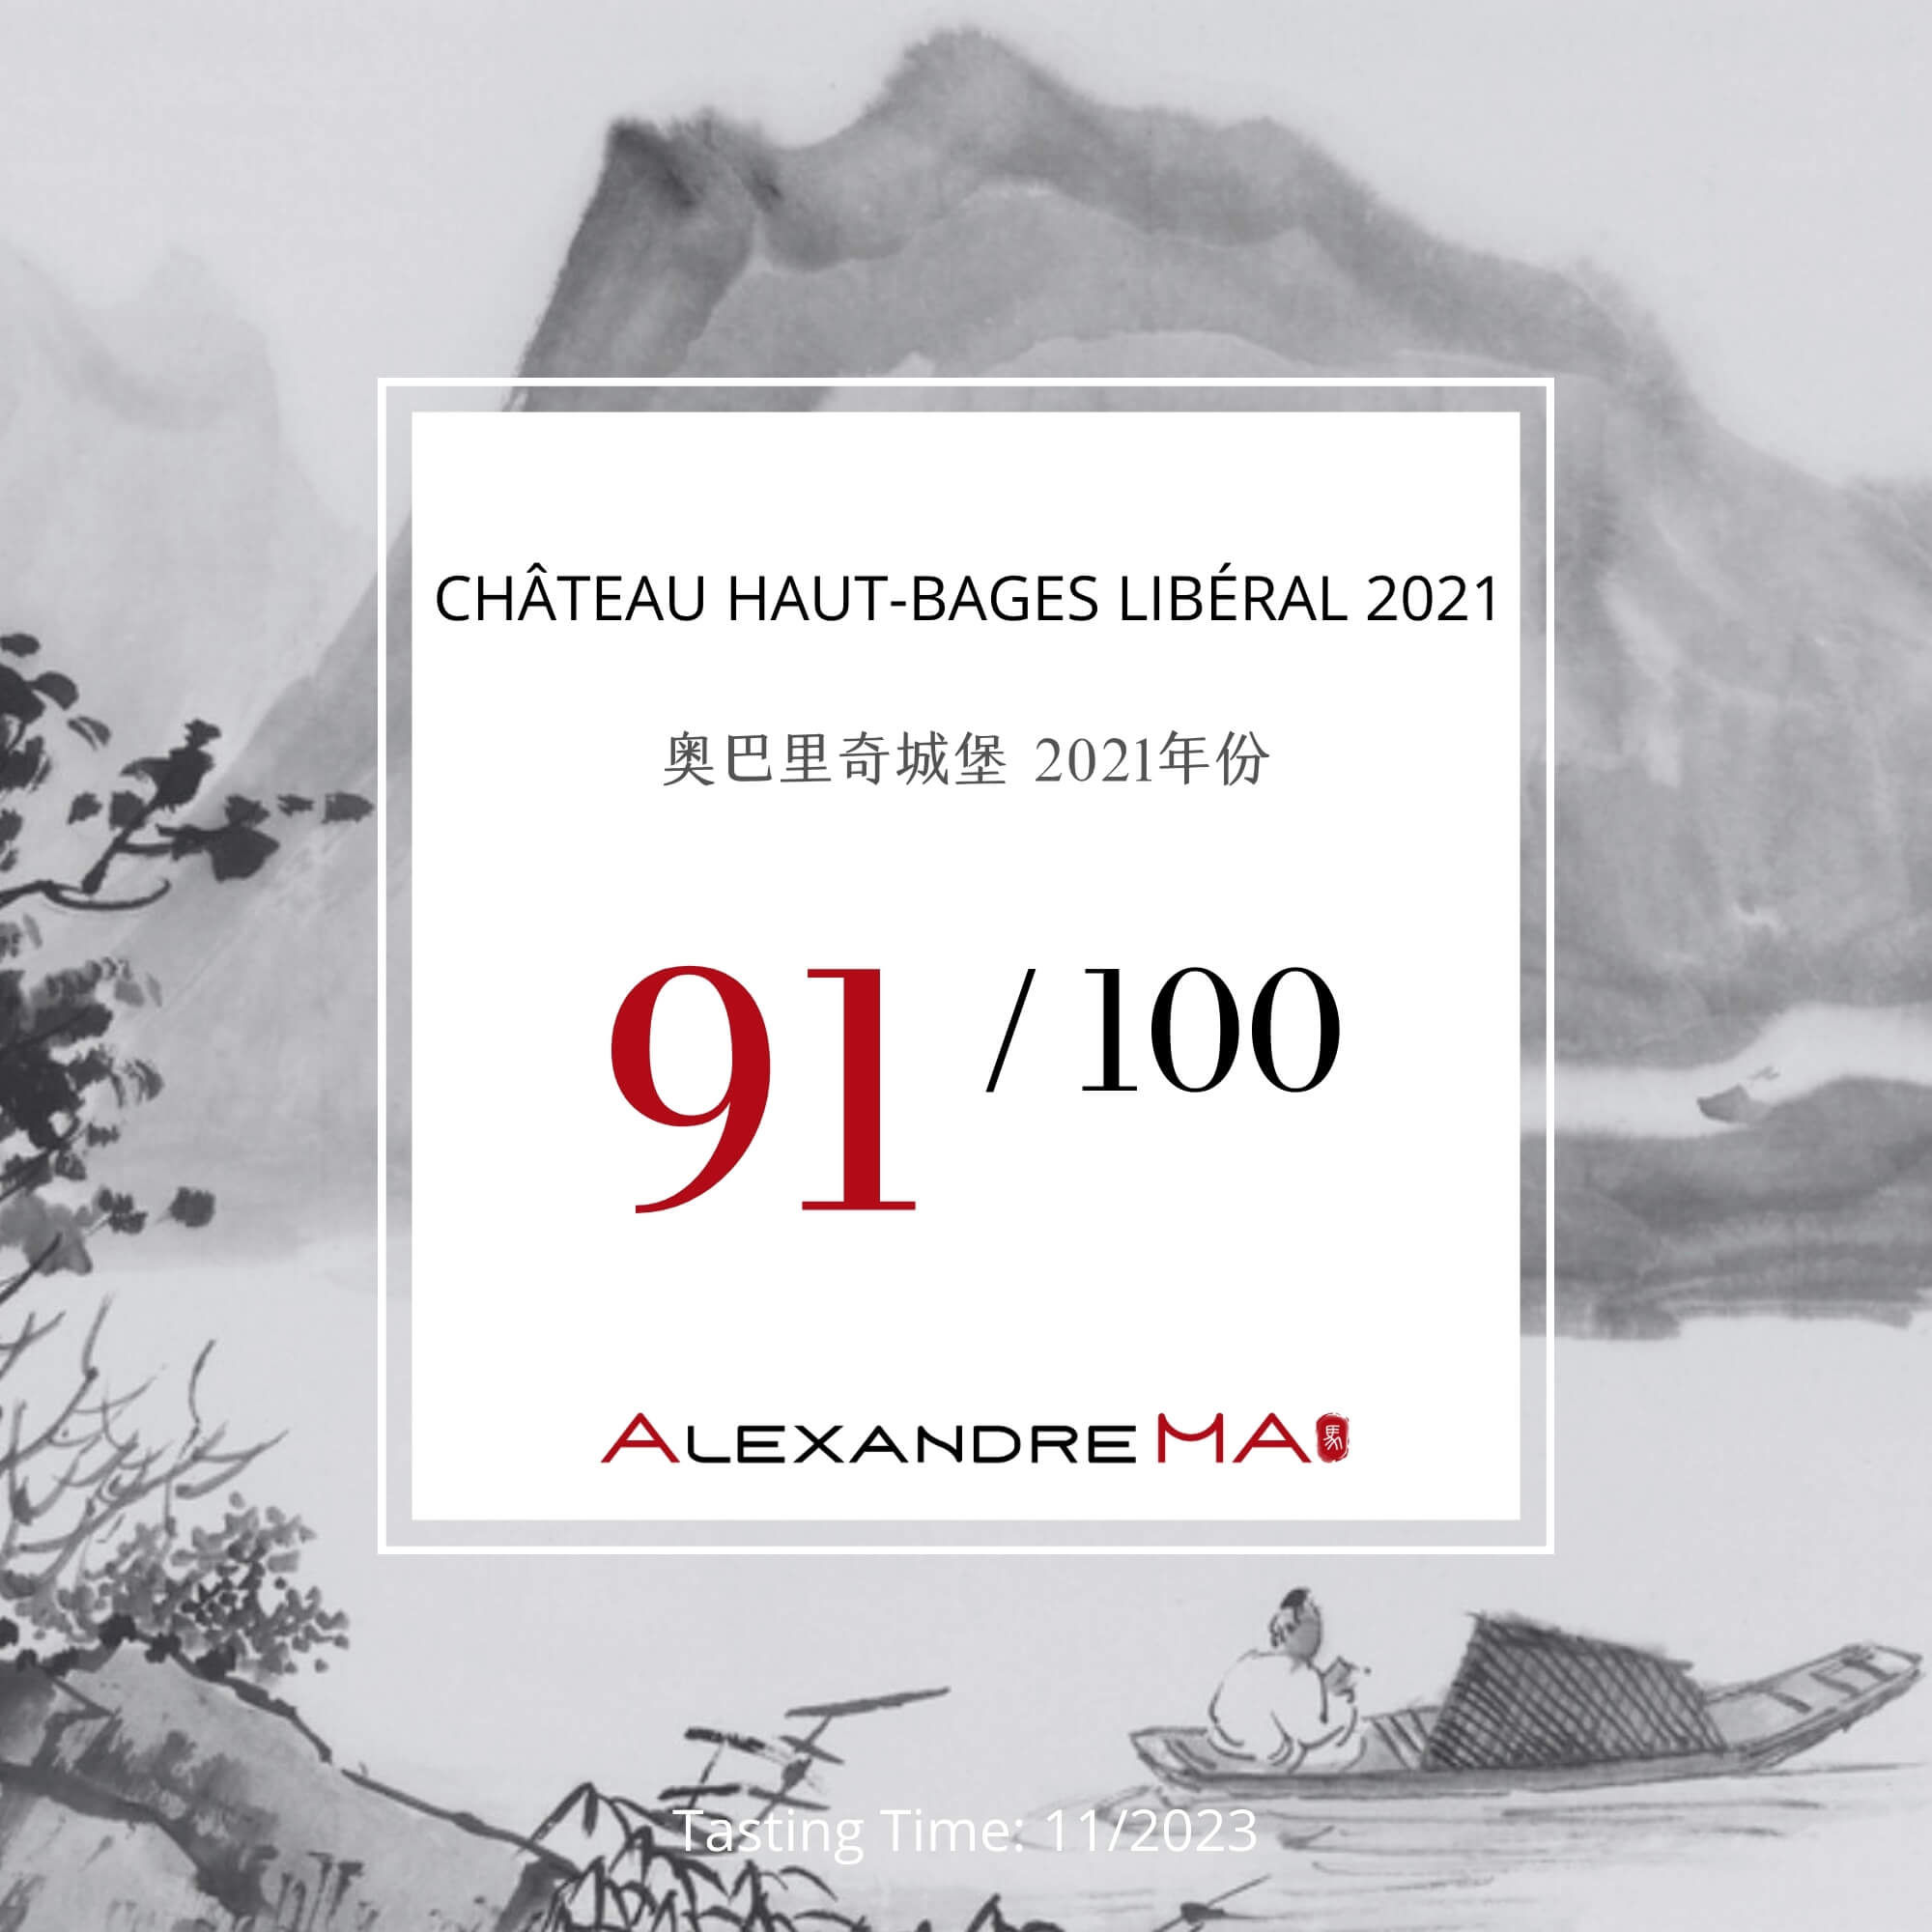 Château Haut-Bages Libéral 2021 - Alexandre MA